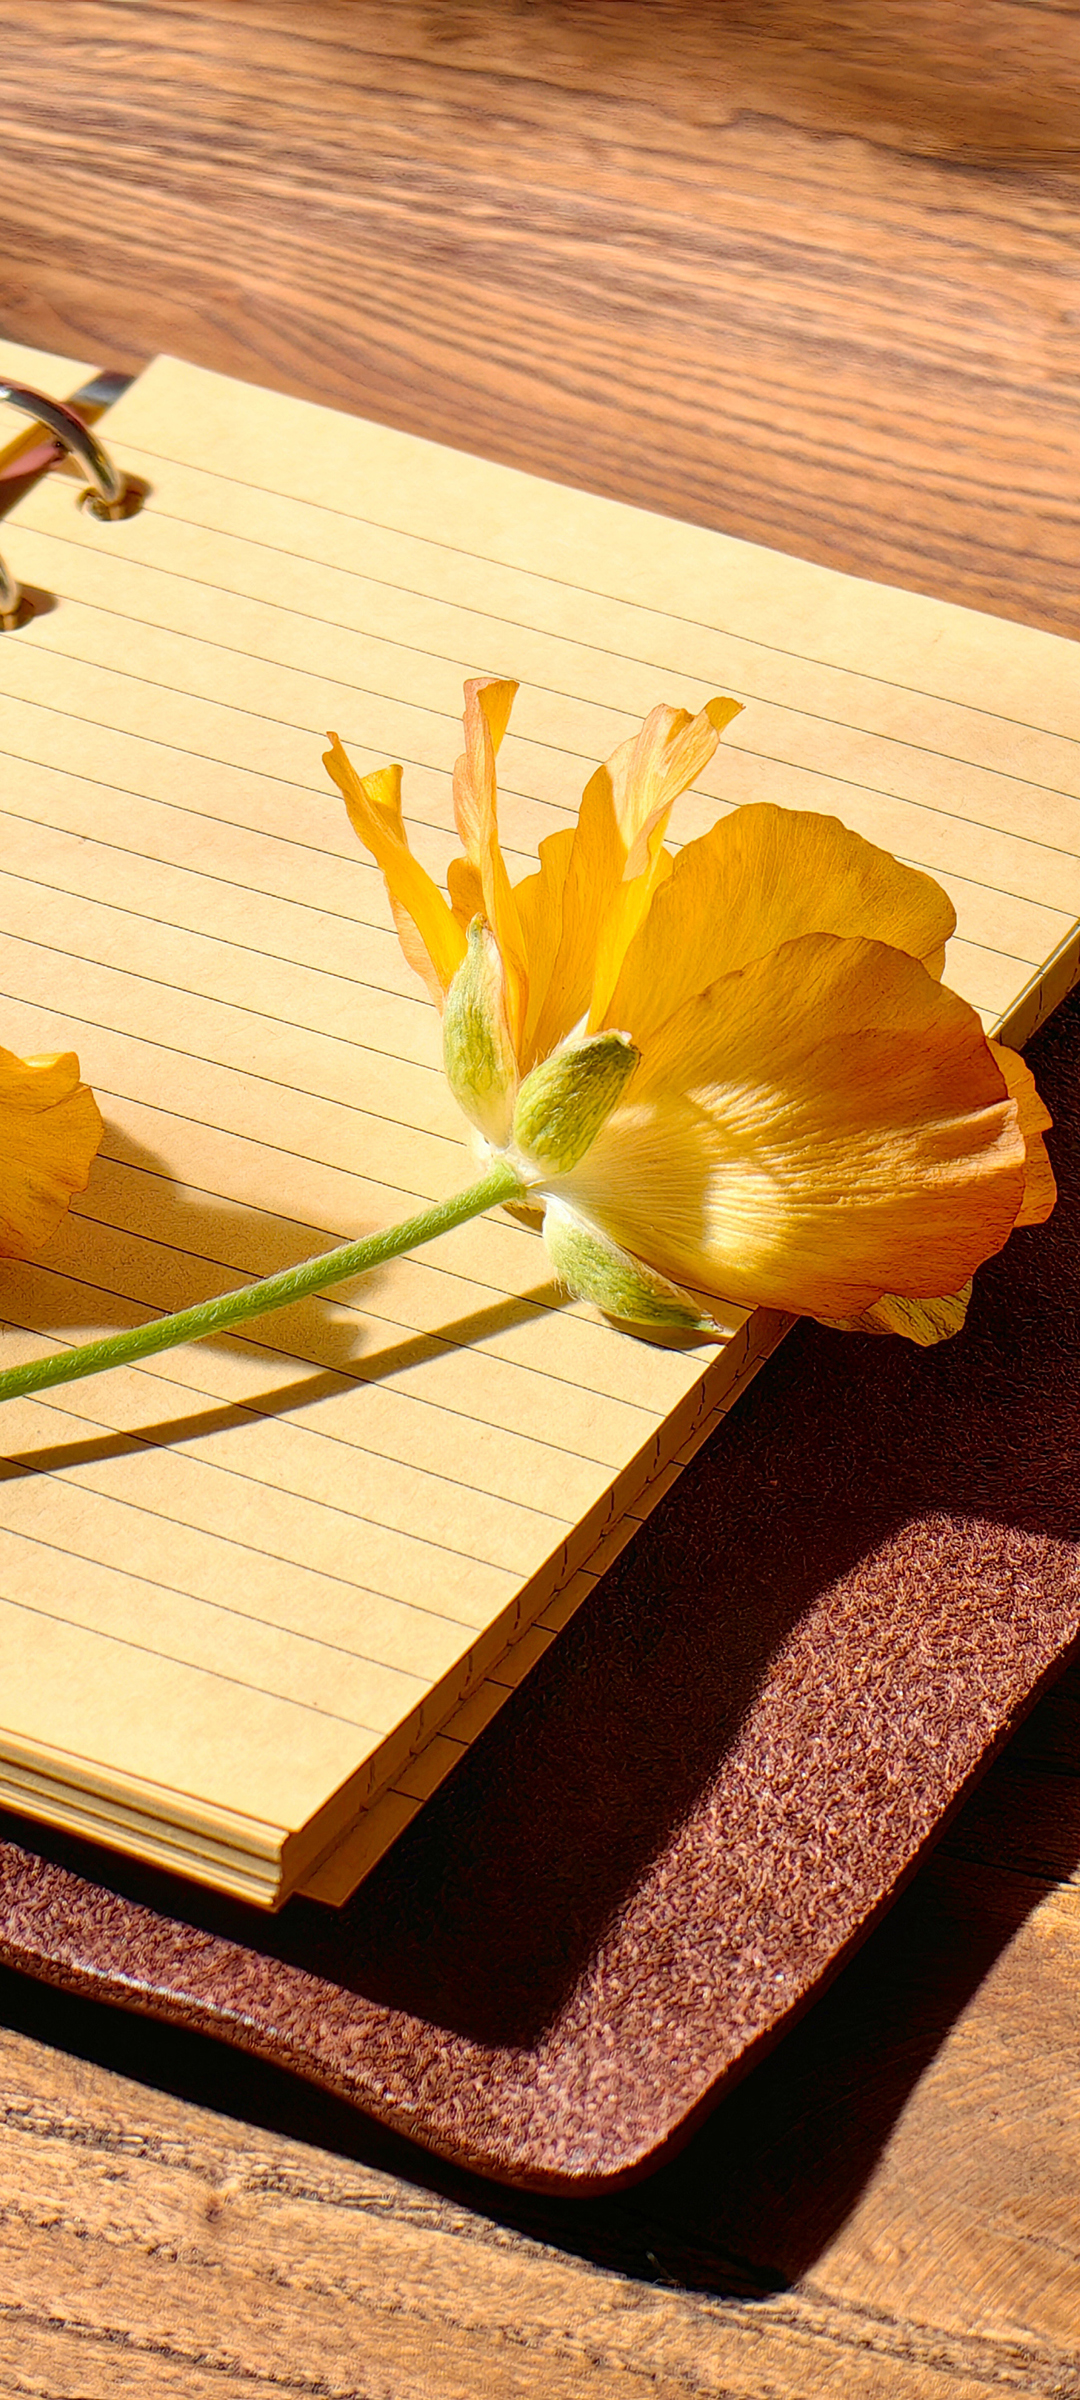 木桌 书写本 花朵 手机背景图